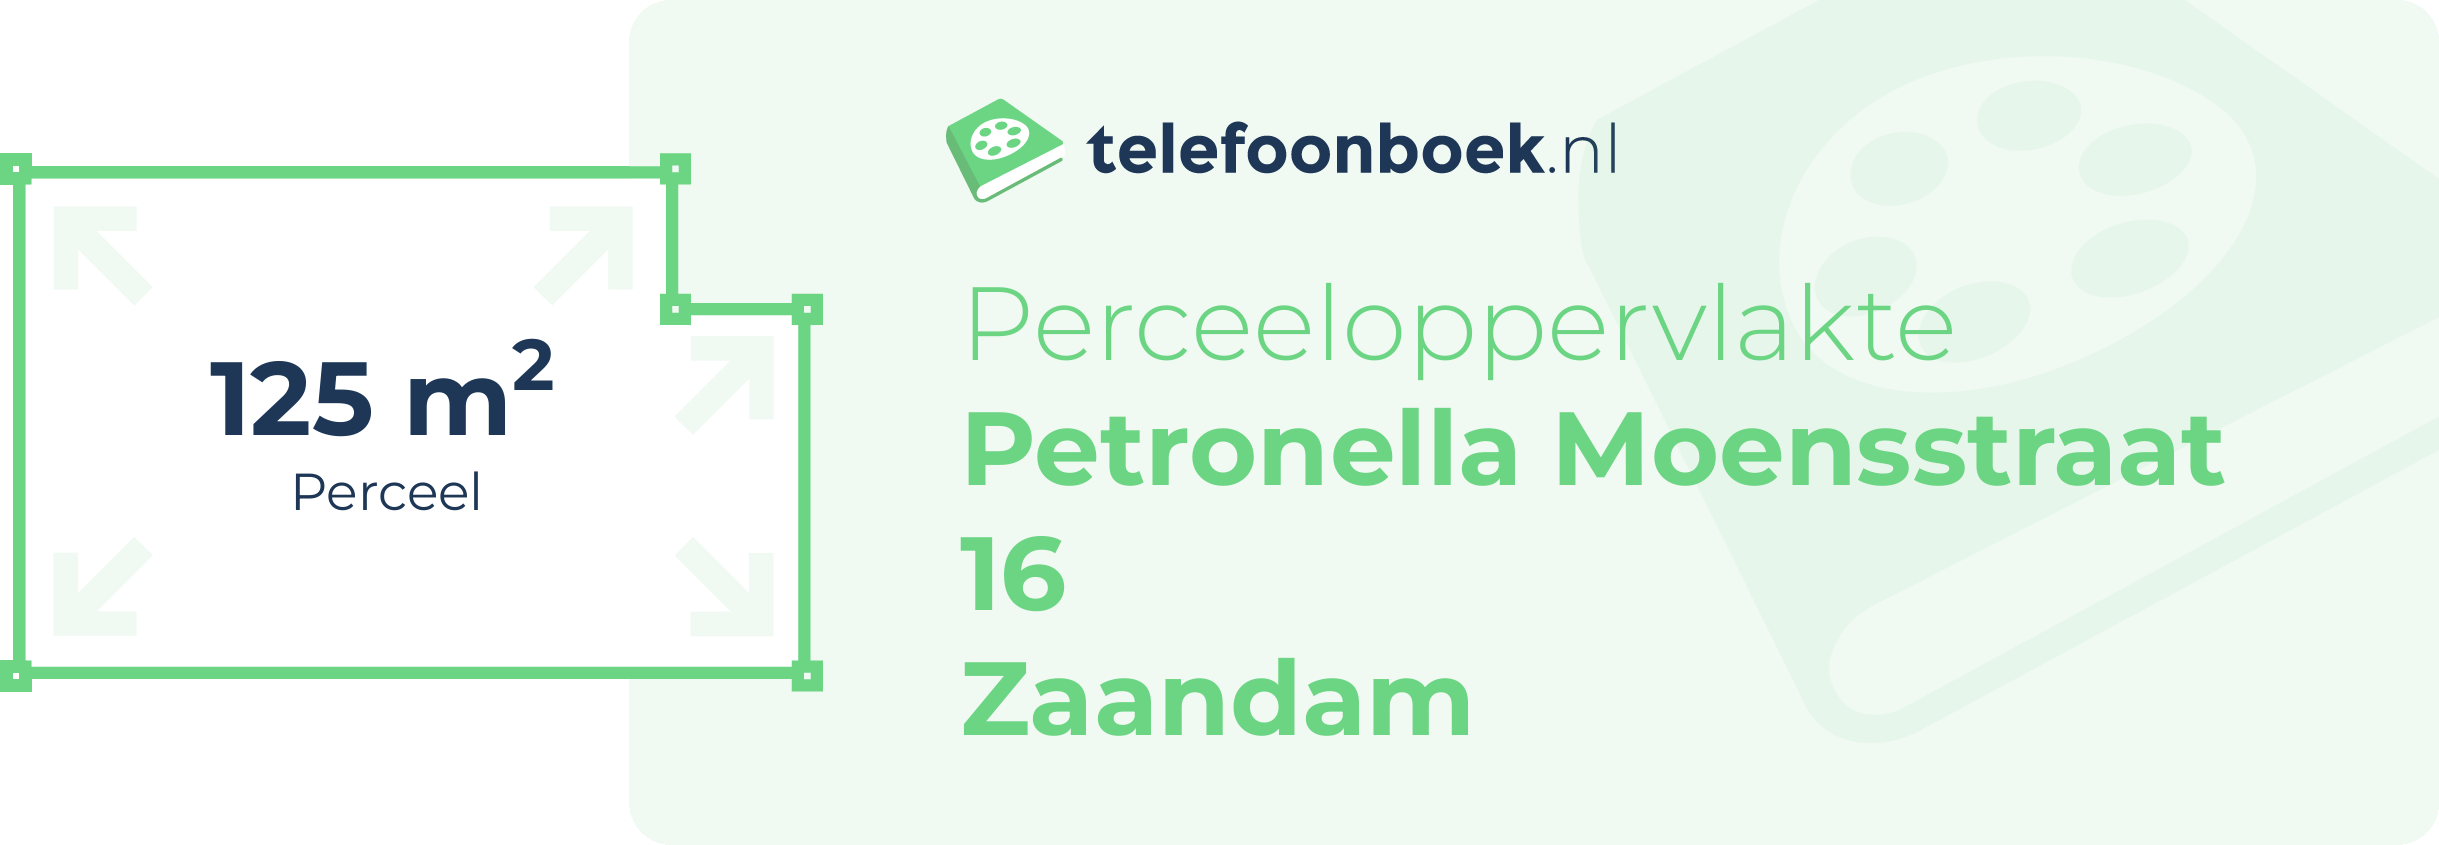 Perceeloppervlakte Petronella Moensstraat 16 Zaandam